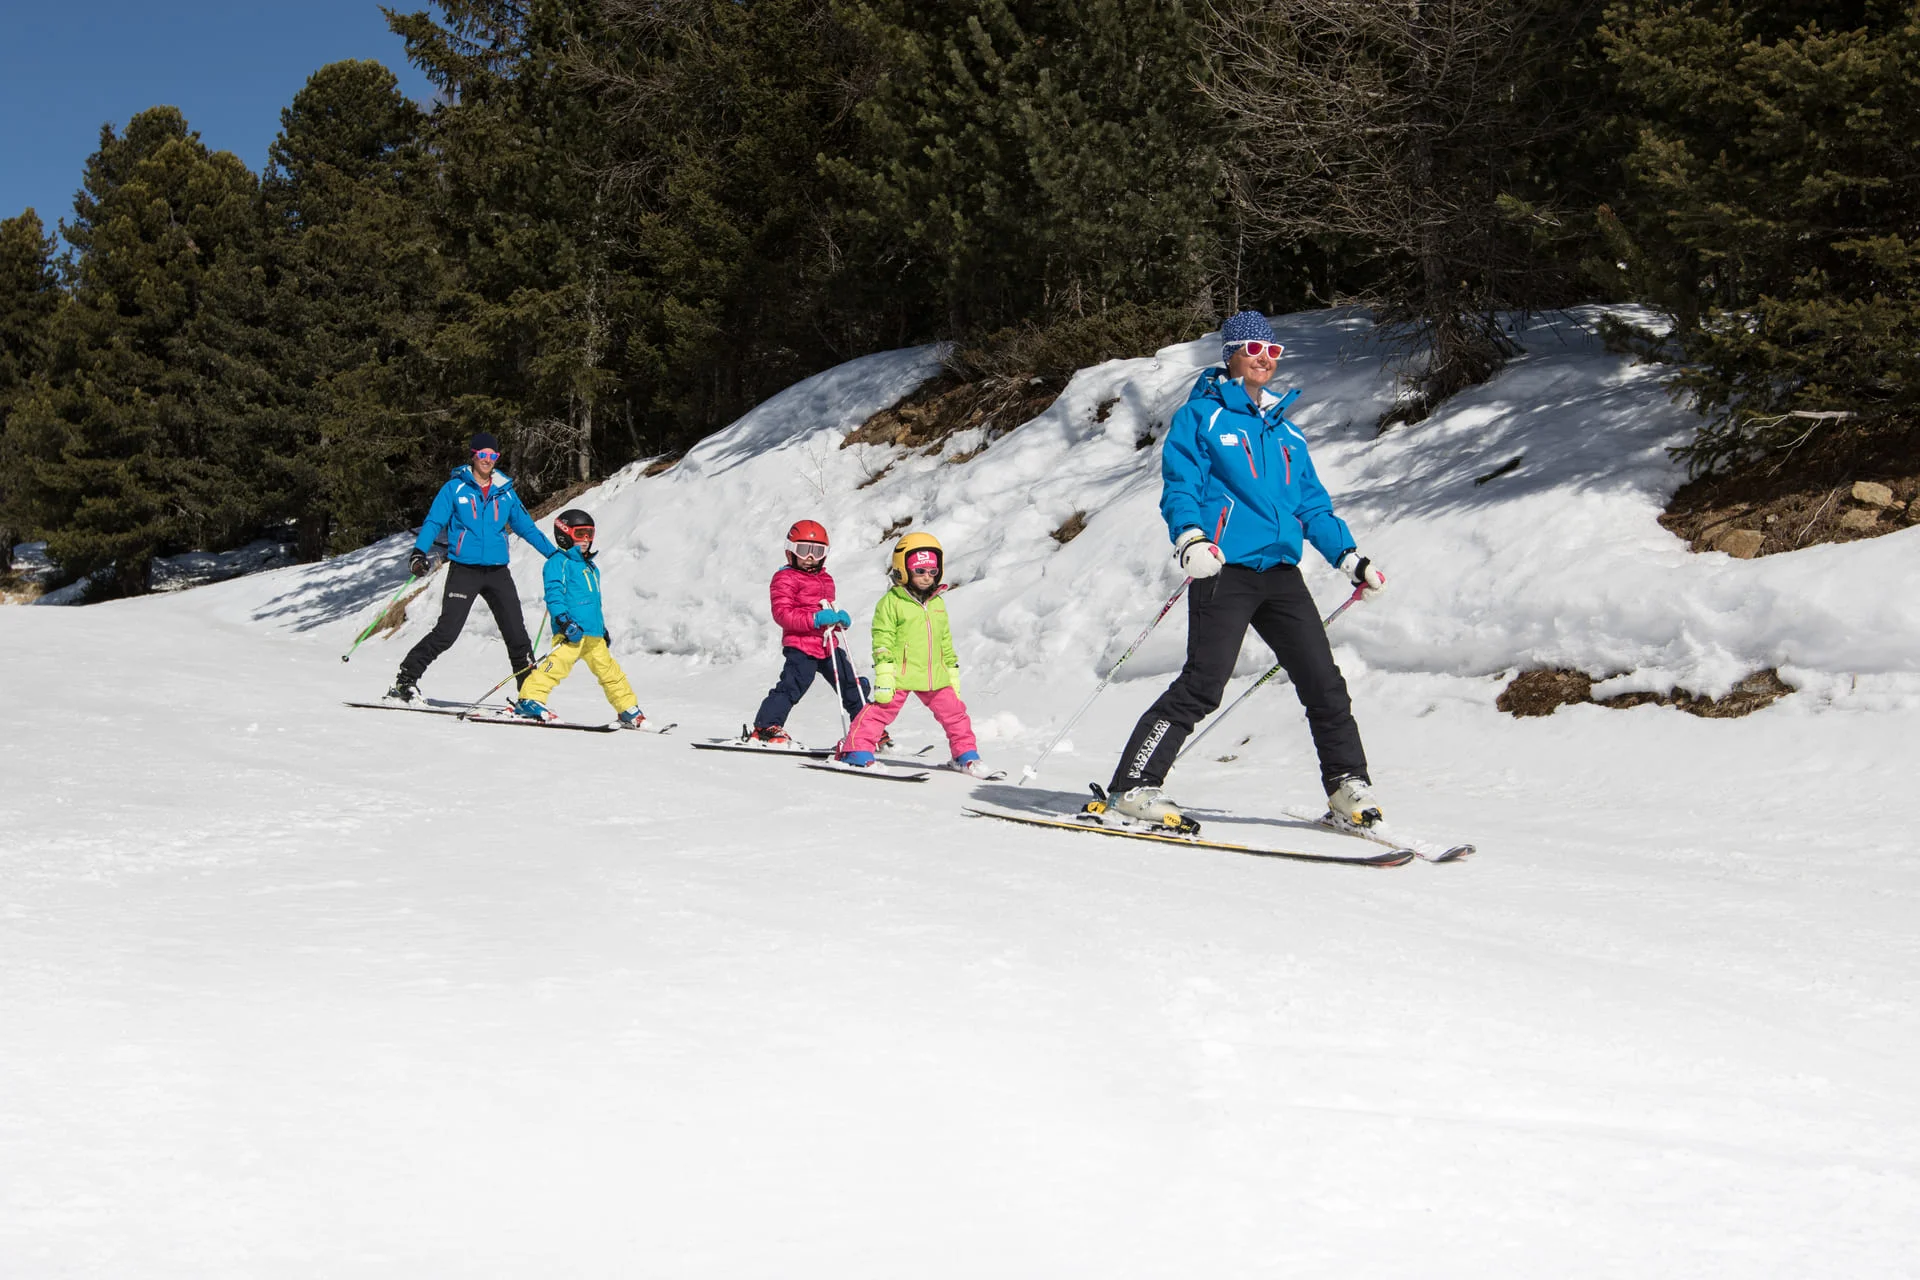 bambini sciano sulla neve